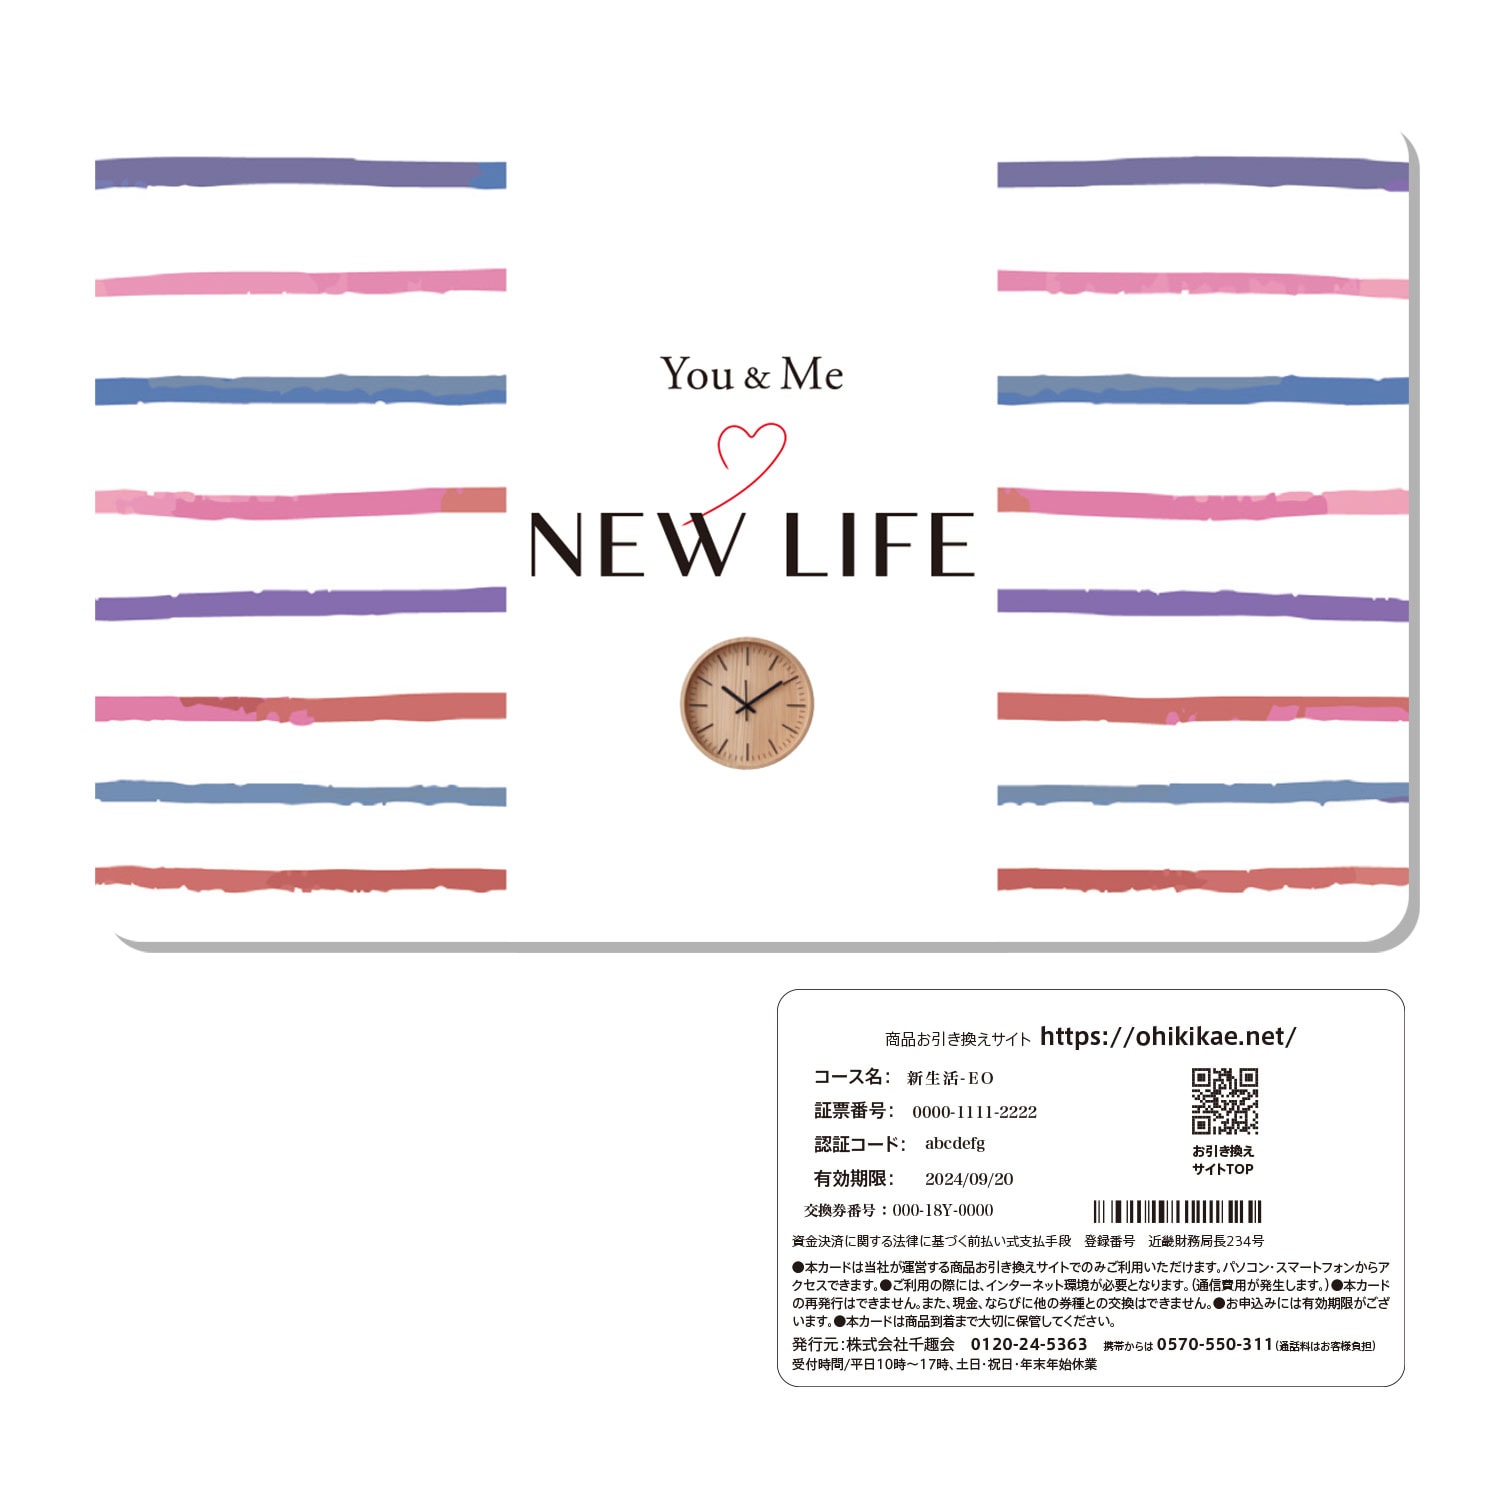 カードギフト】新生活ギフトカード「You&Me NEW LIFE」EO(You&Me